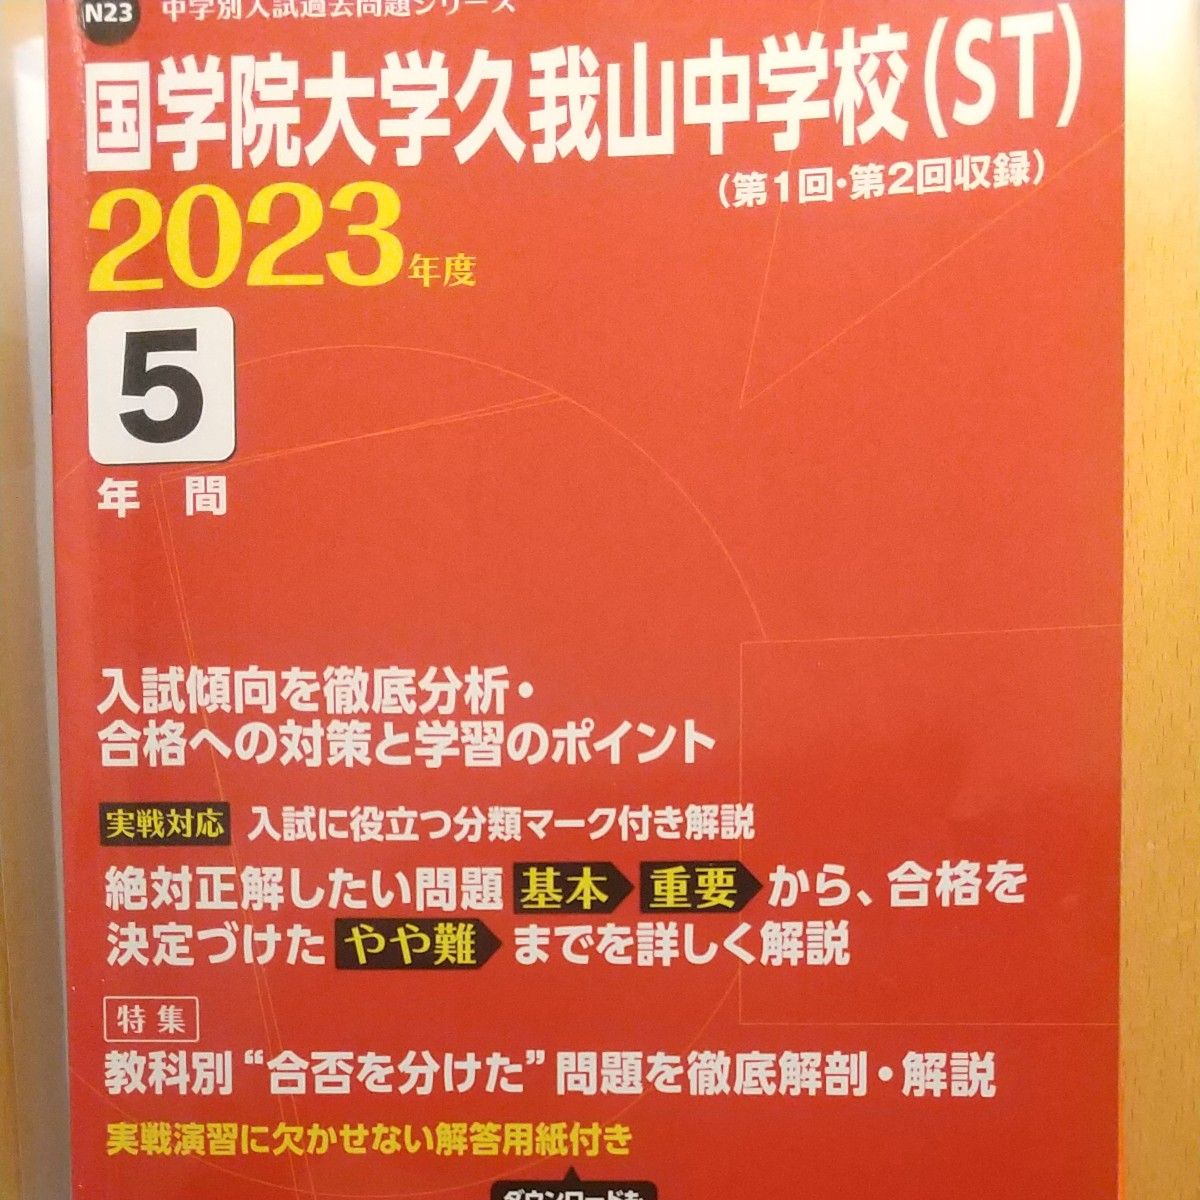 2023年度（2018年度から2022年度分掲載）国学院大学久我山中学校入試問題 (ST) 5年間 東京学参